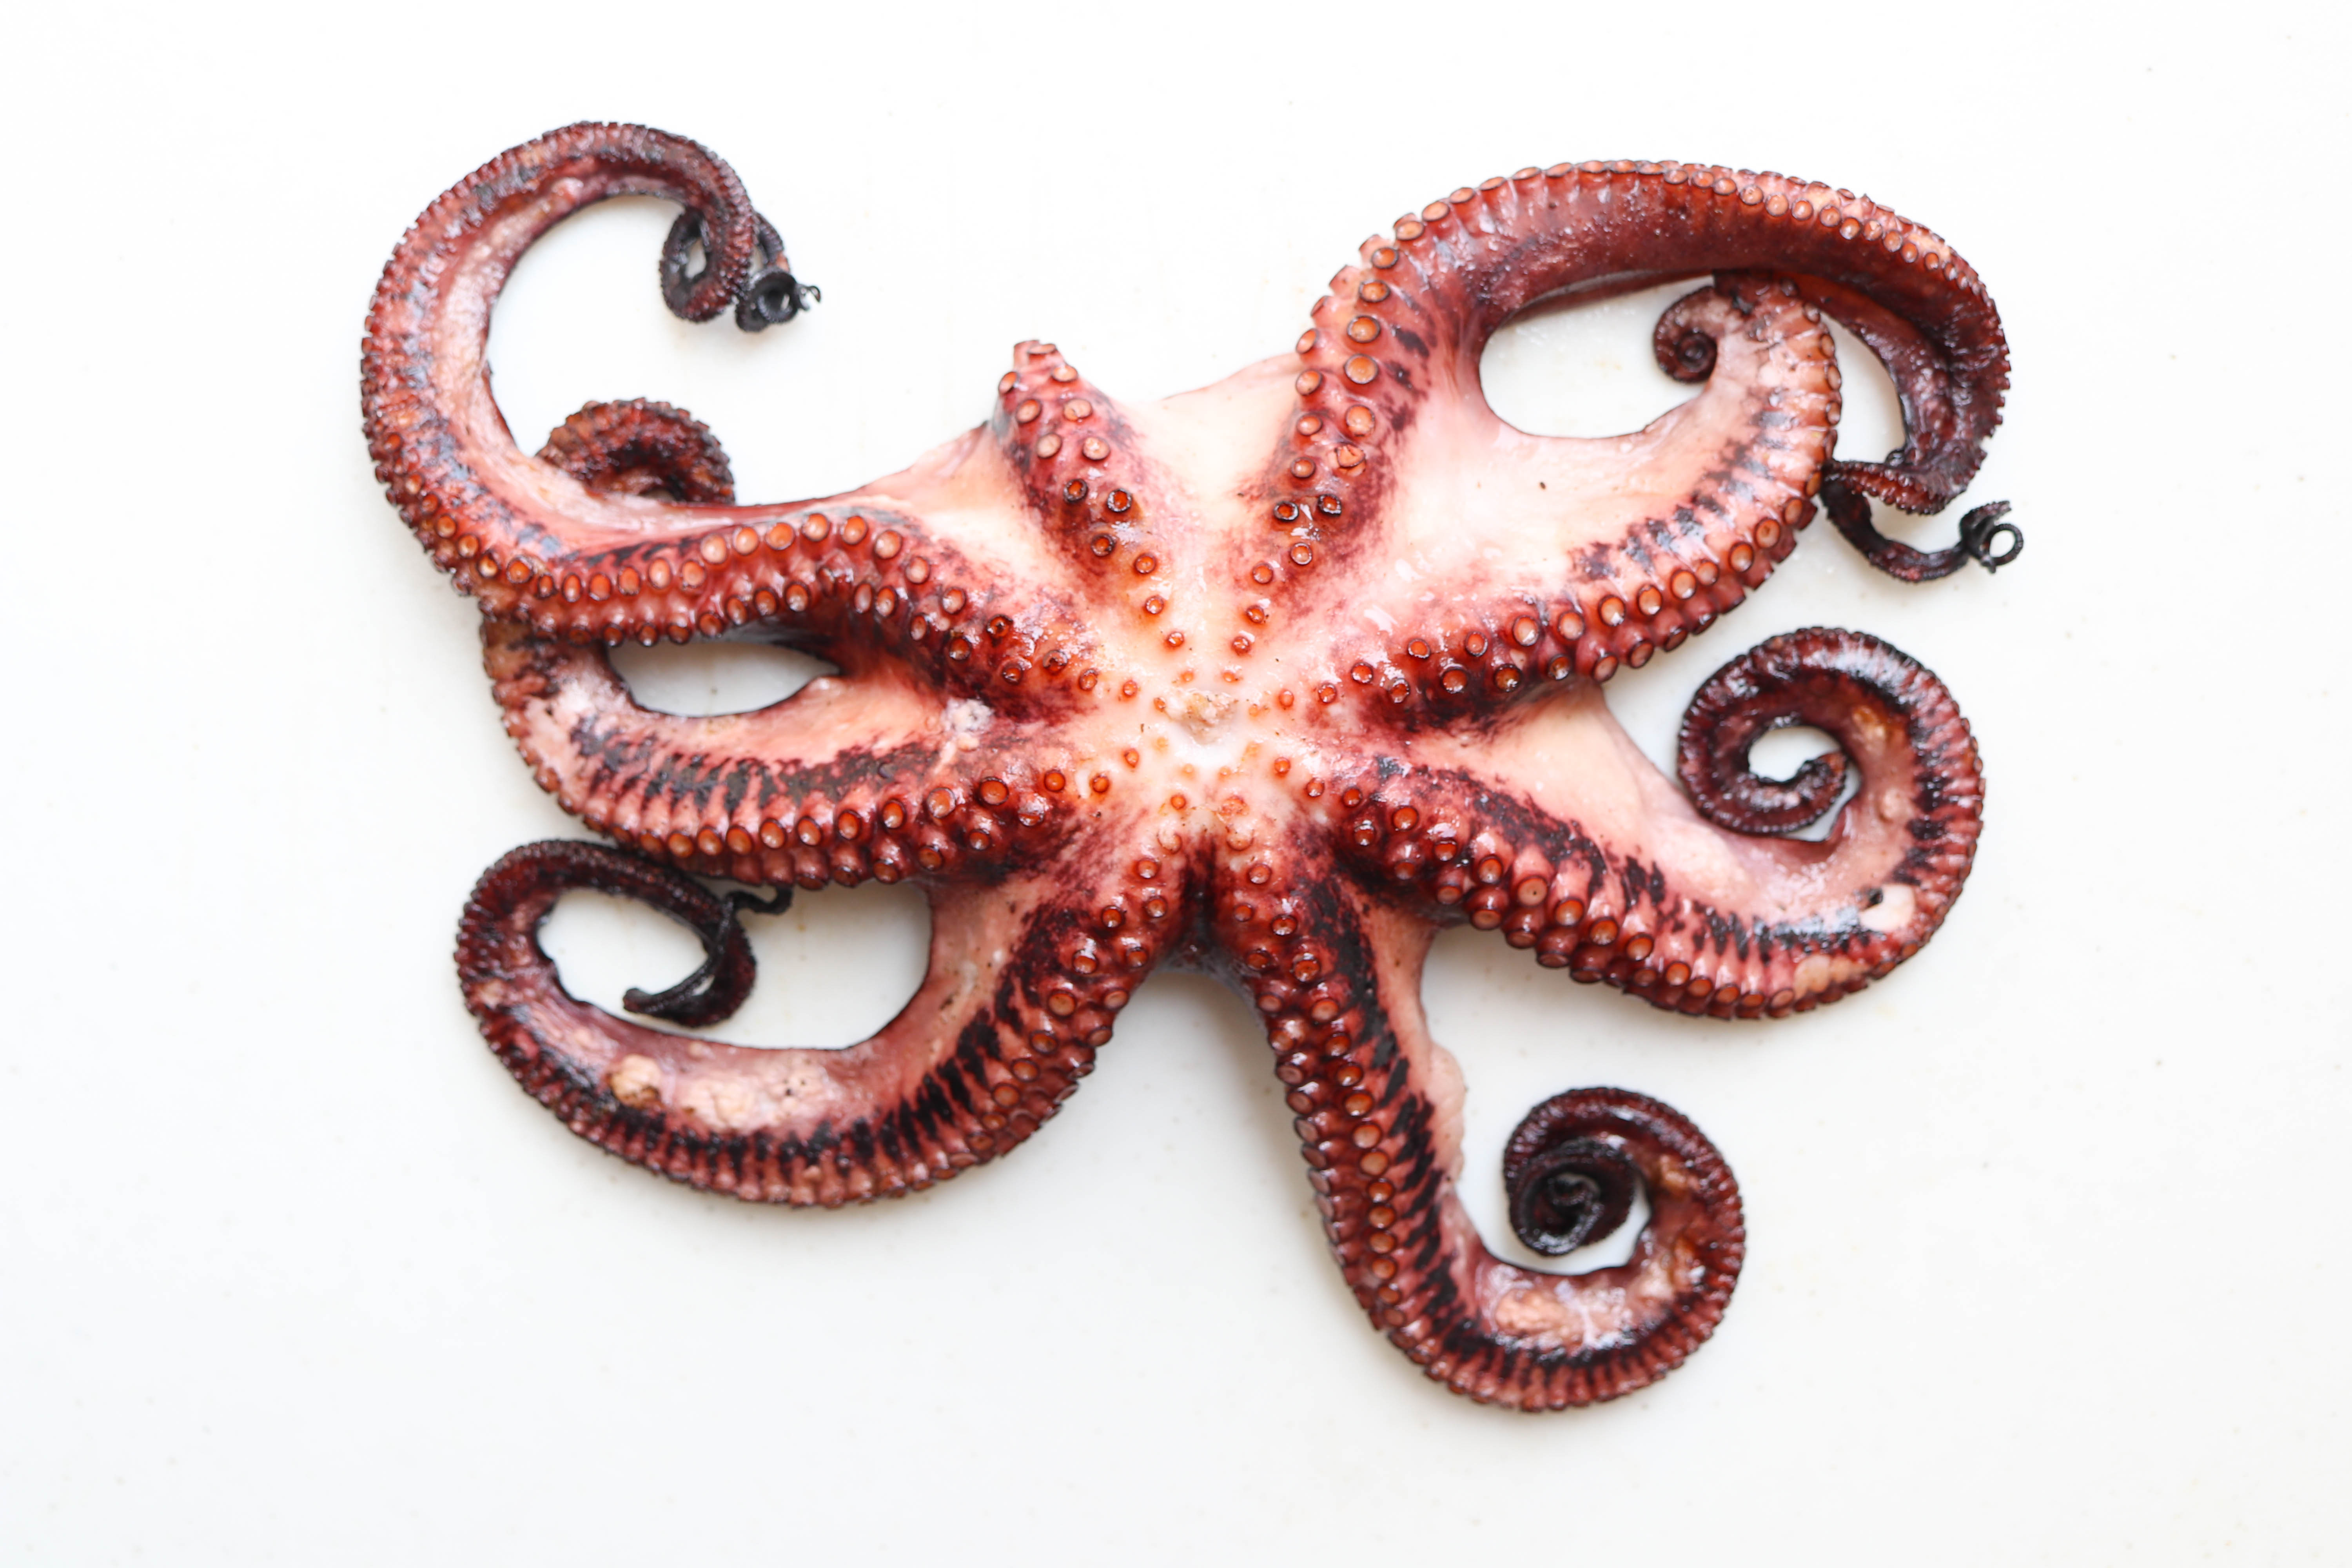 Italian-Style Grilled Octopus * Harbor Fish Market.